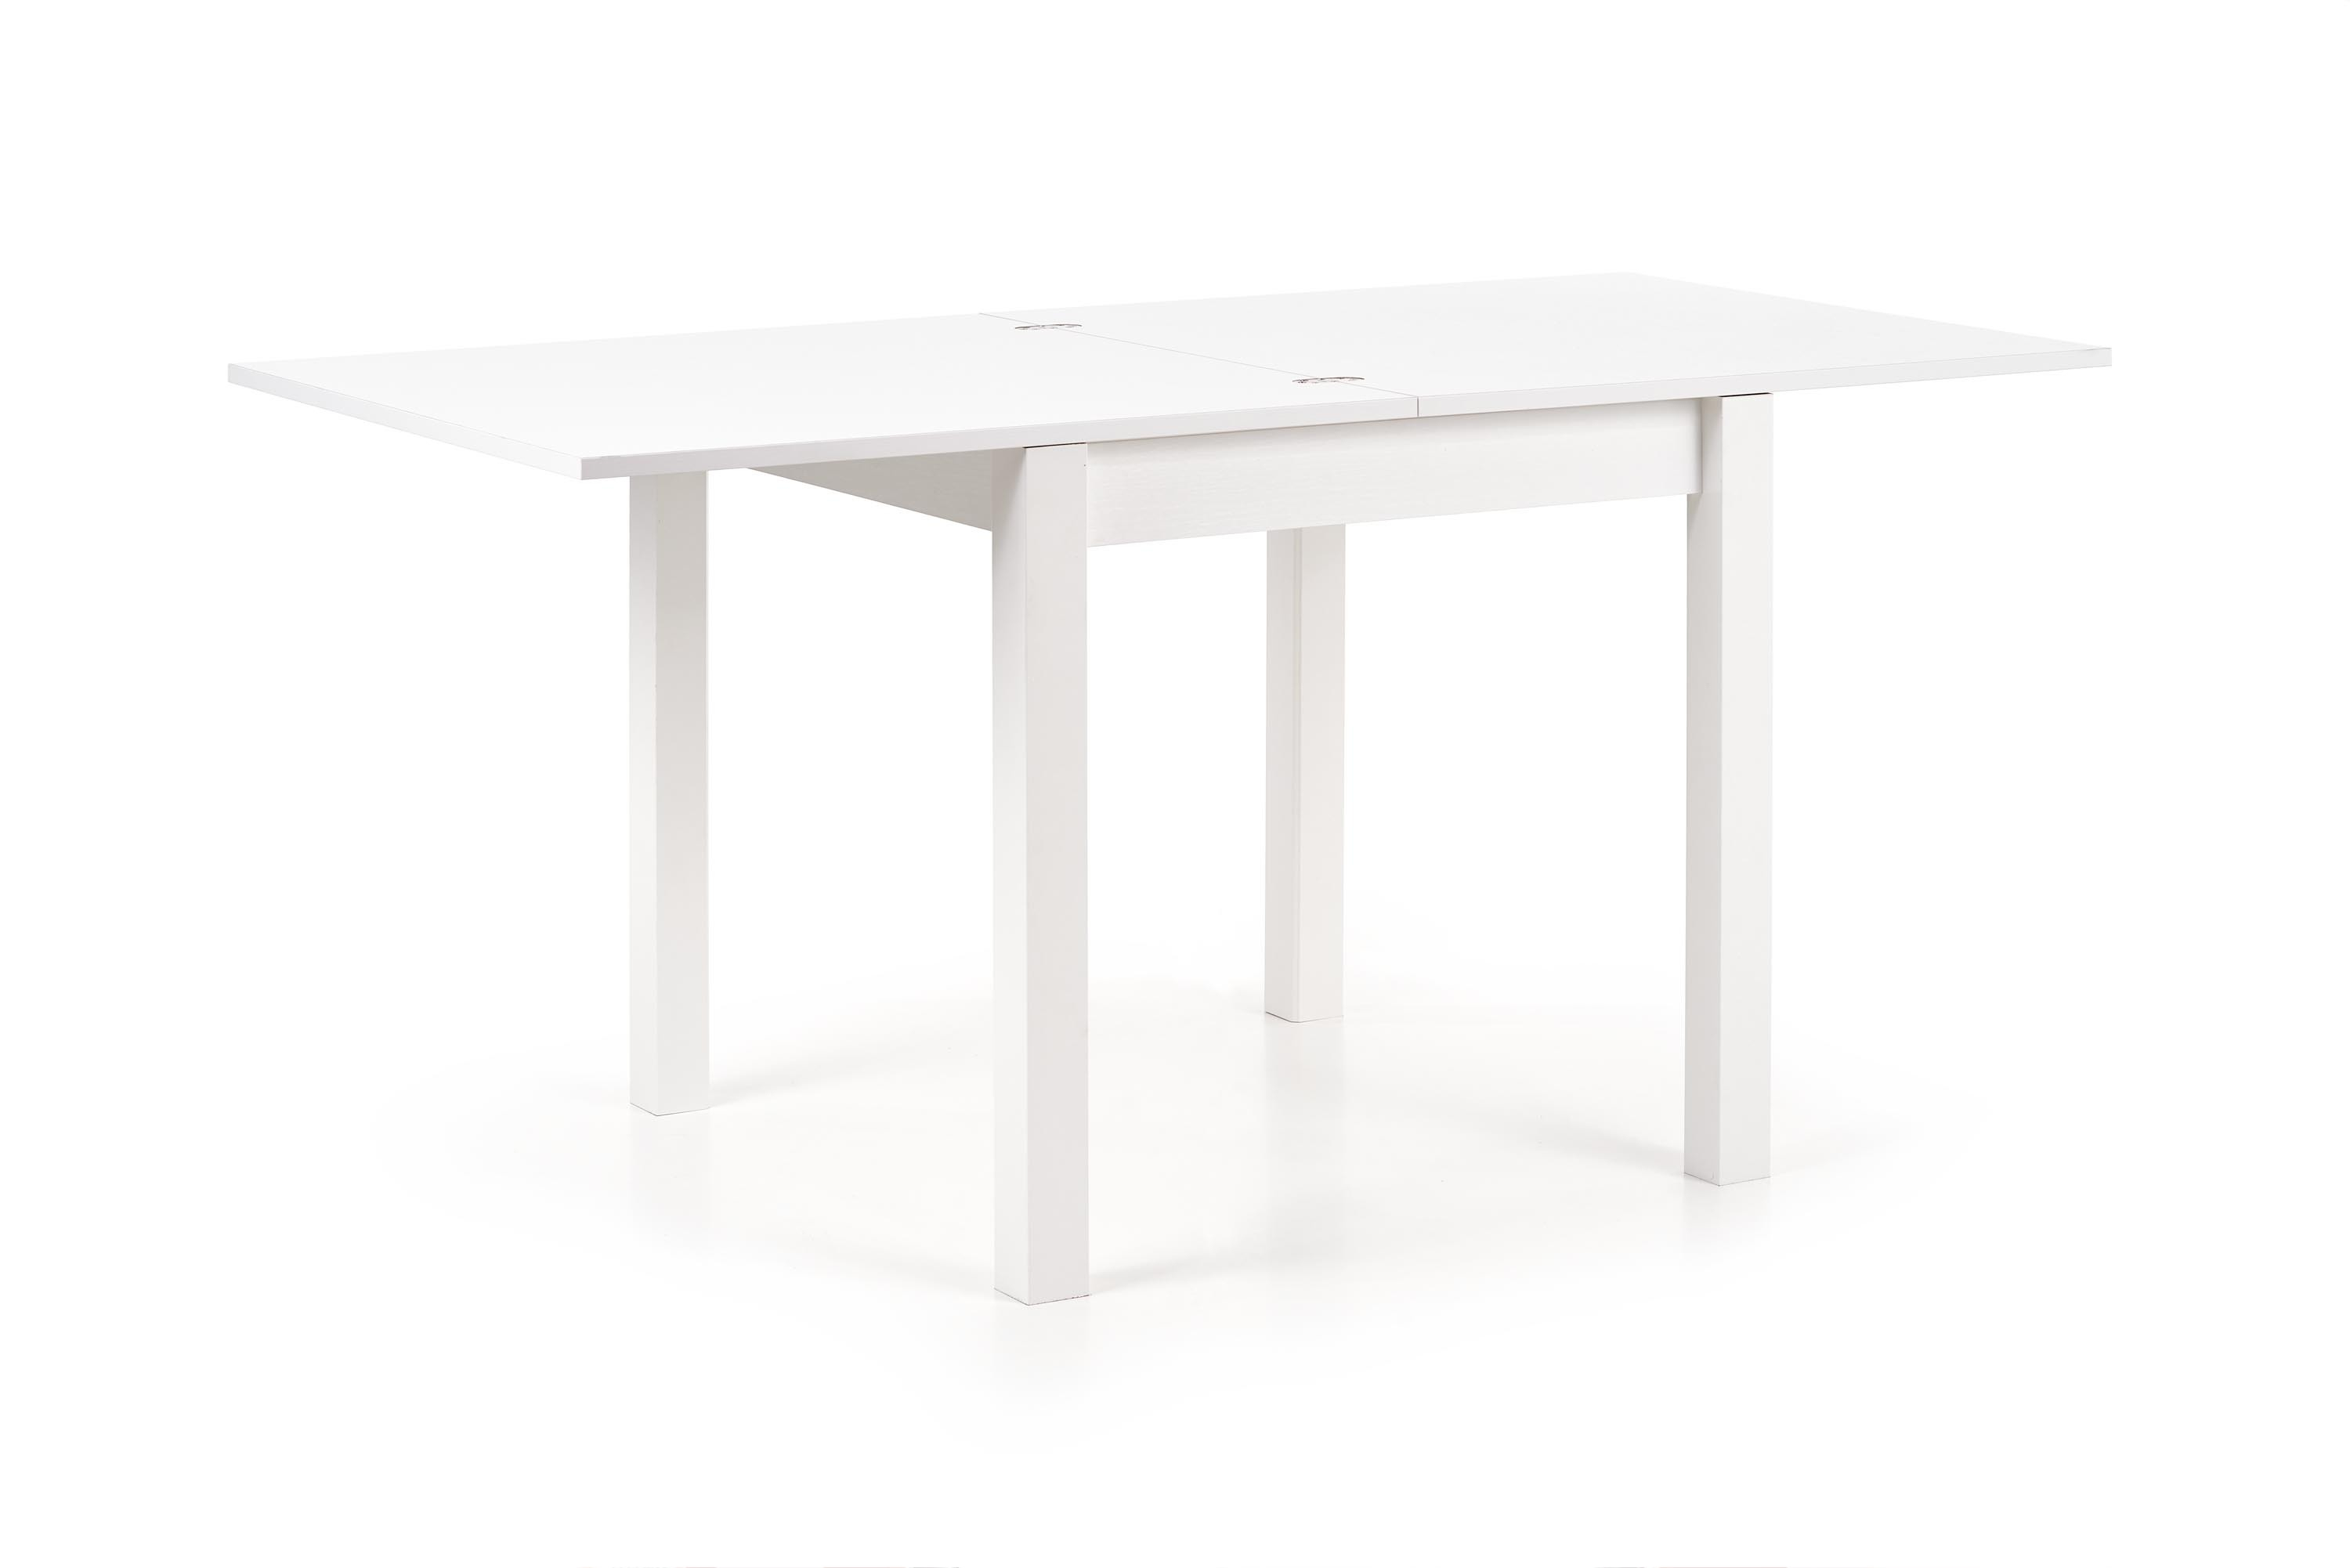 GRACJAN stół kolor biały (2p=1szt)